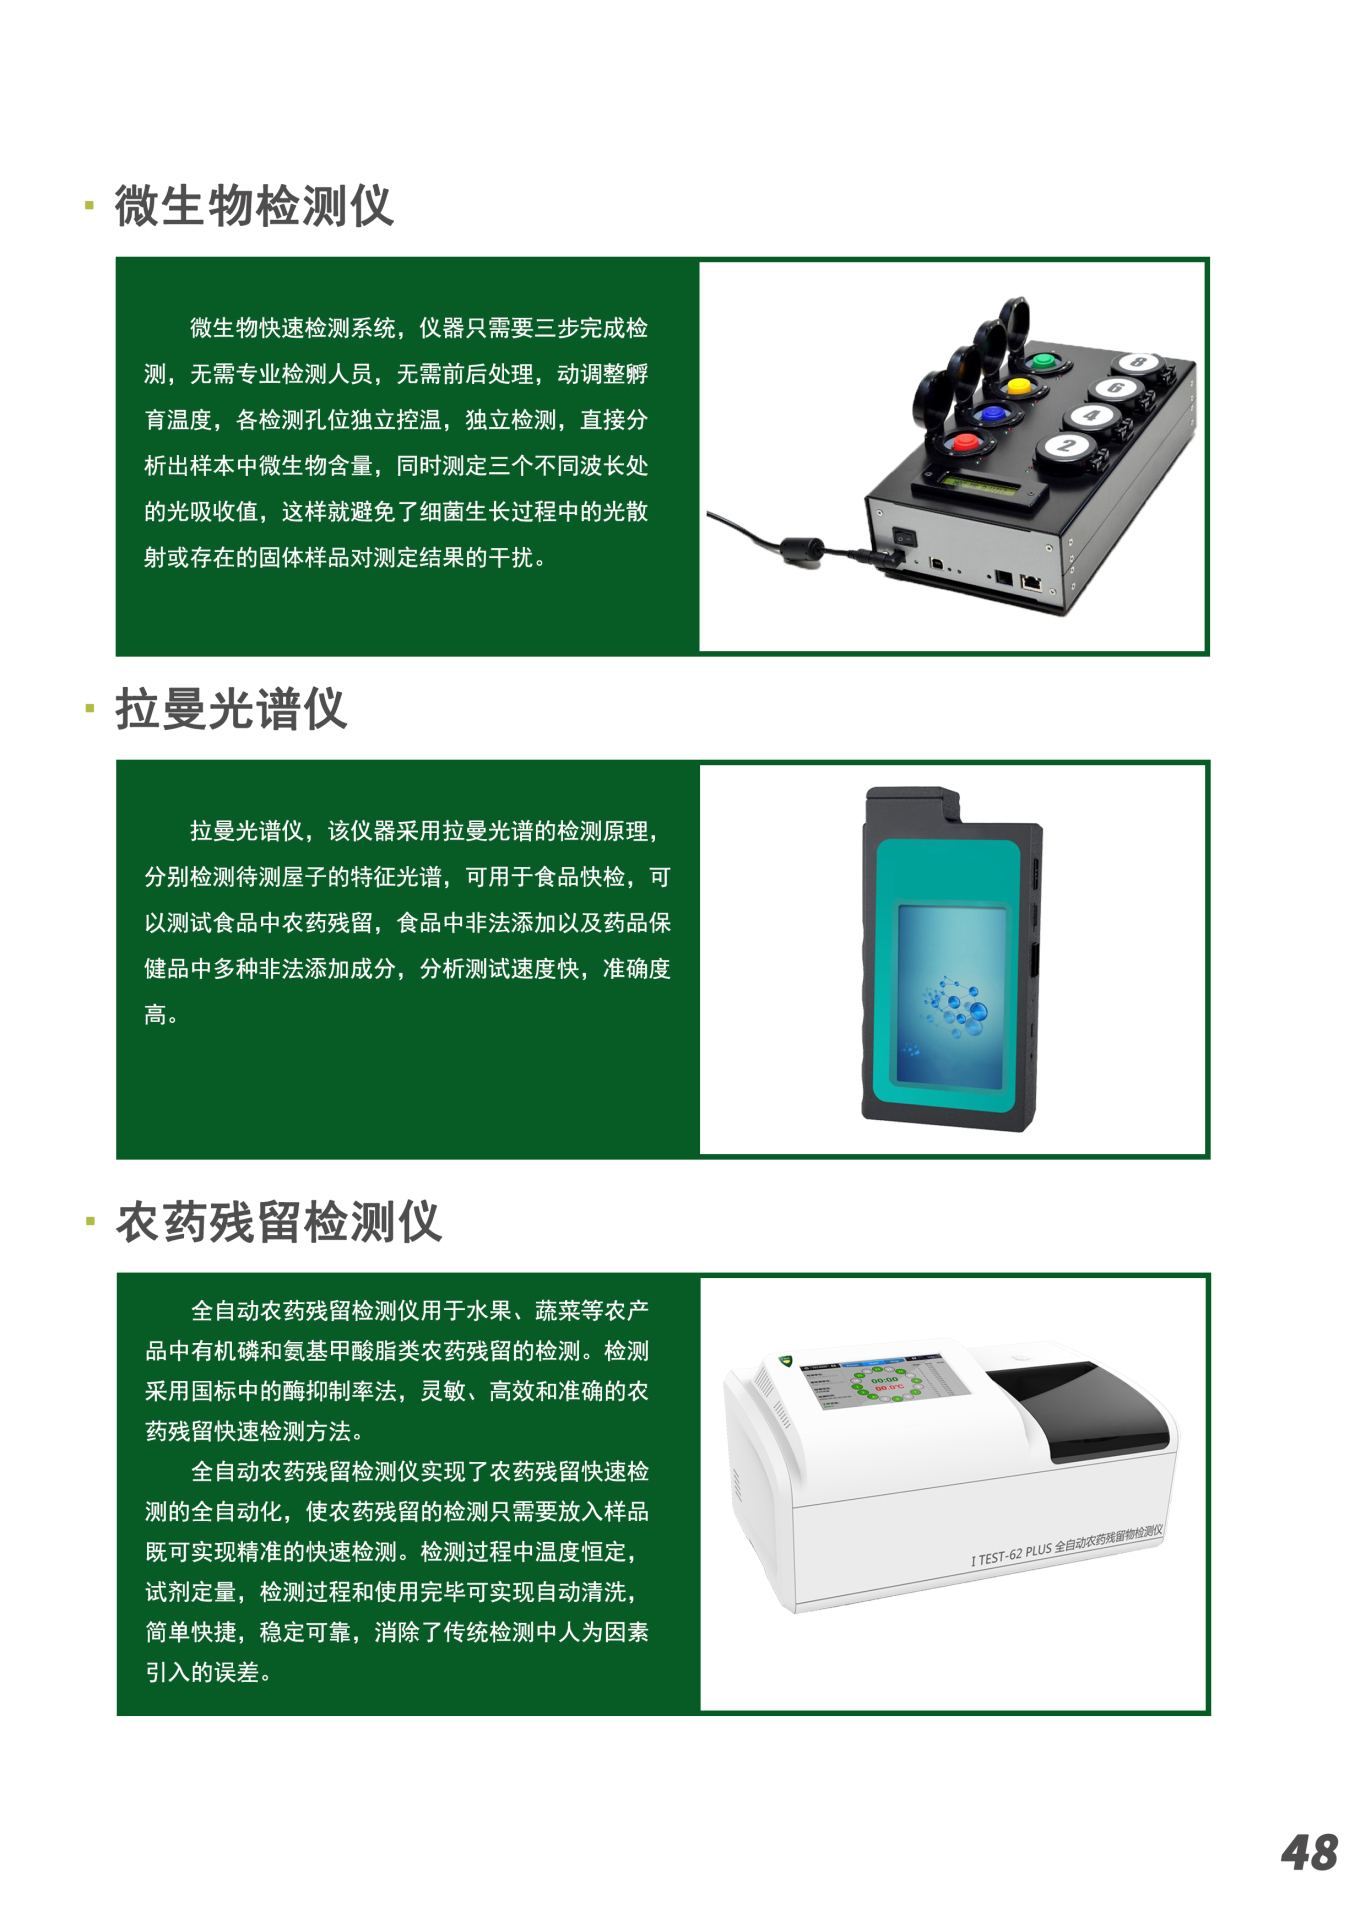 北京艾旗斯德科技有限公司仪器介绍彩页图7